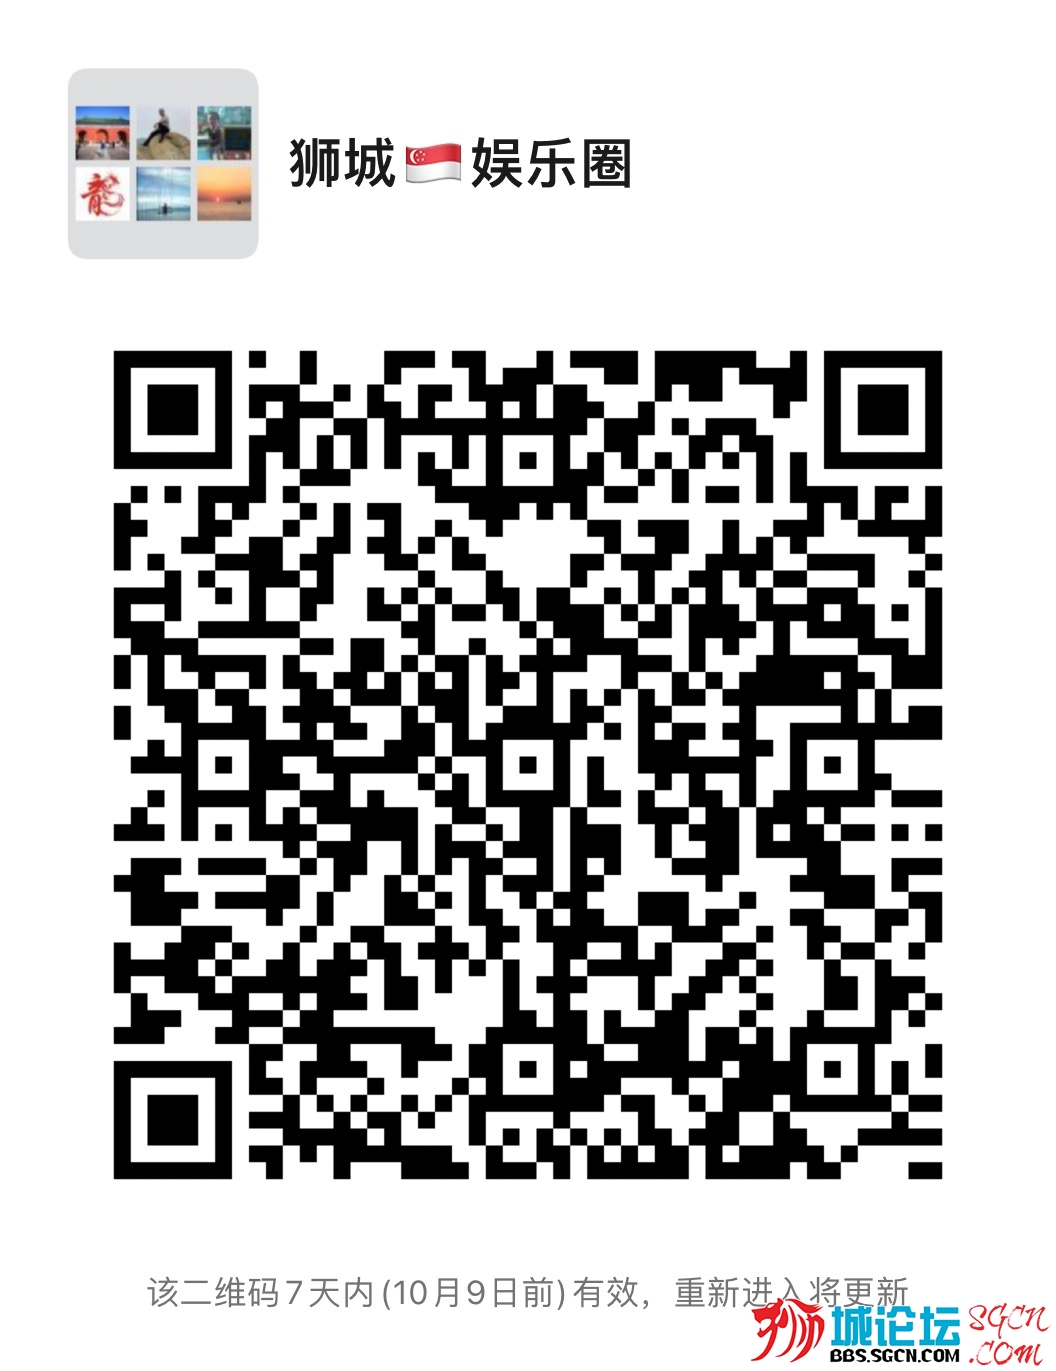 WeChat Image_20221002134520.jpg